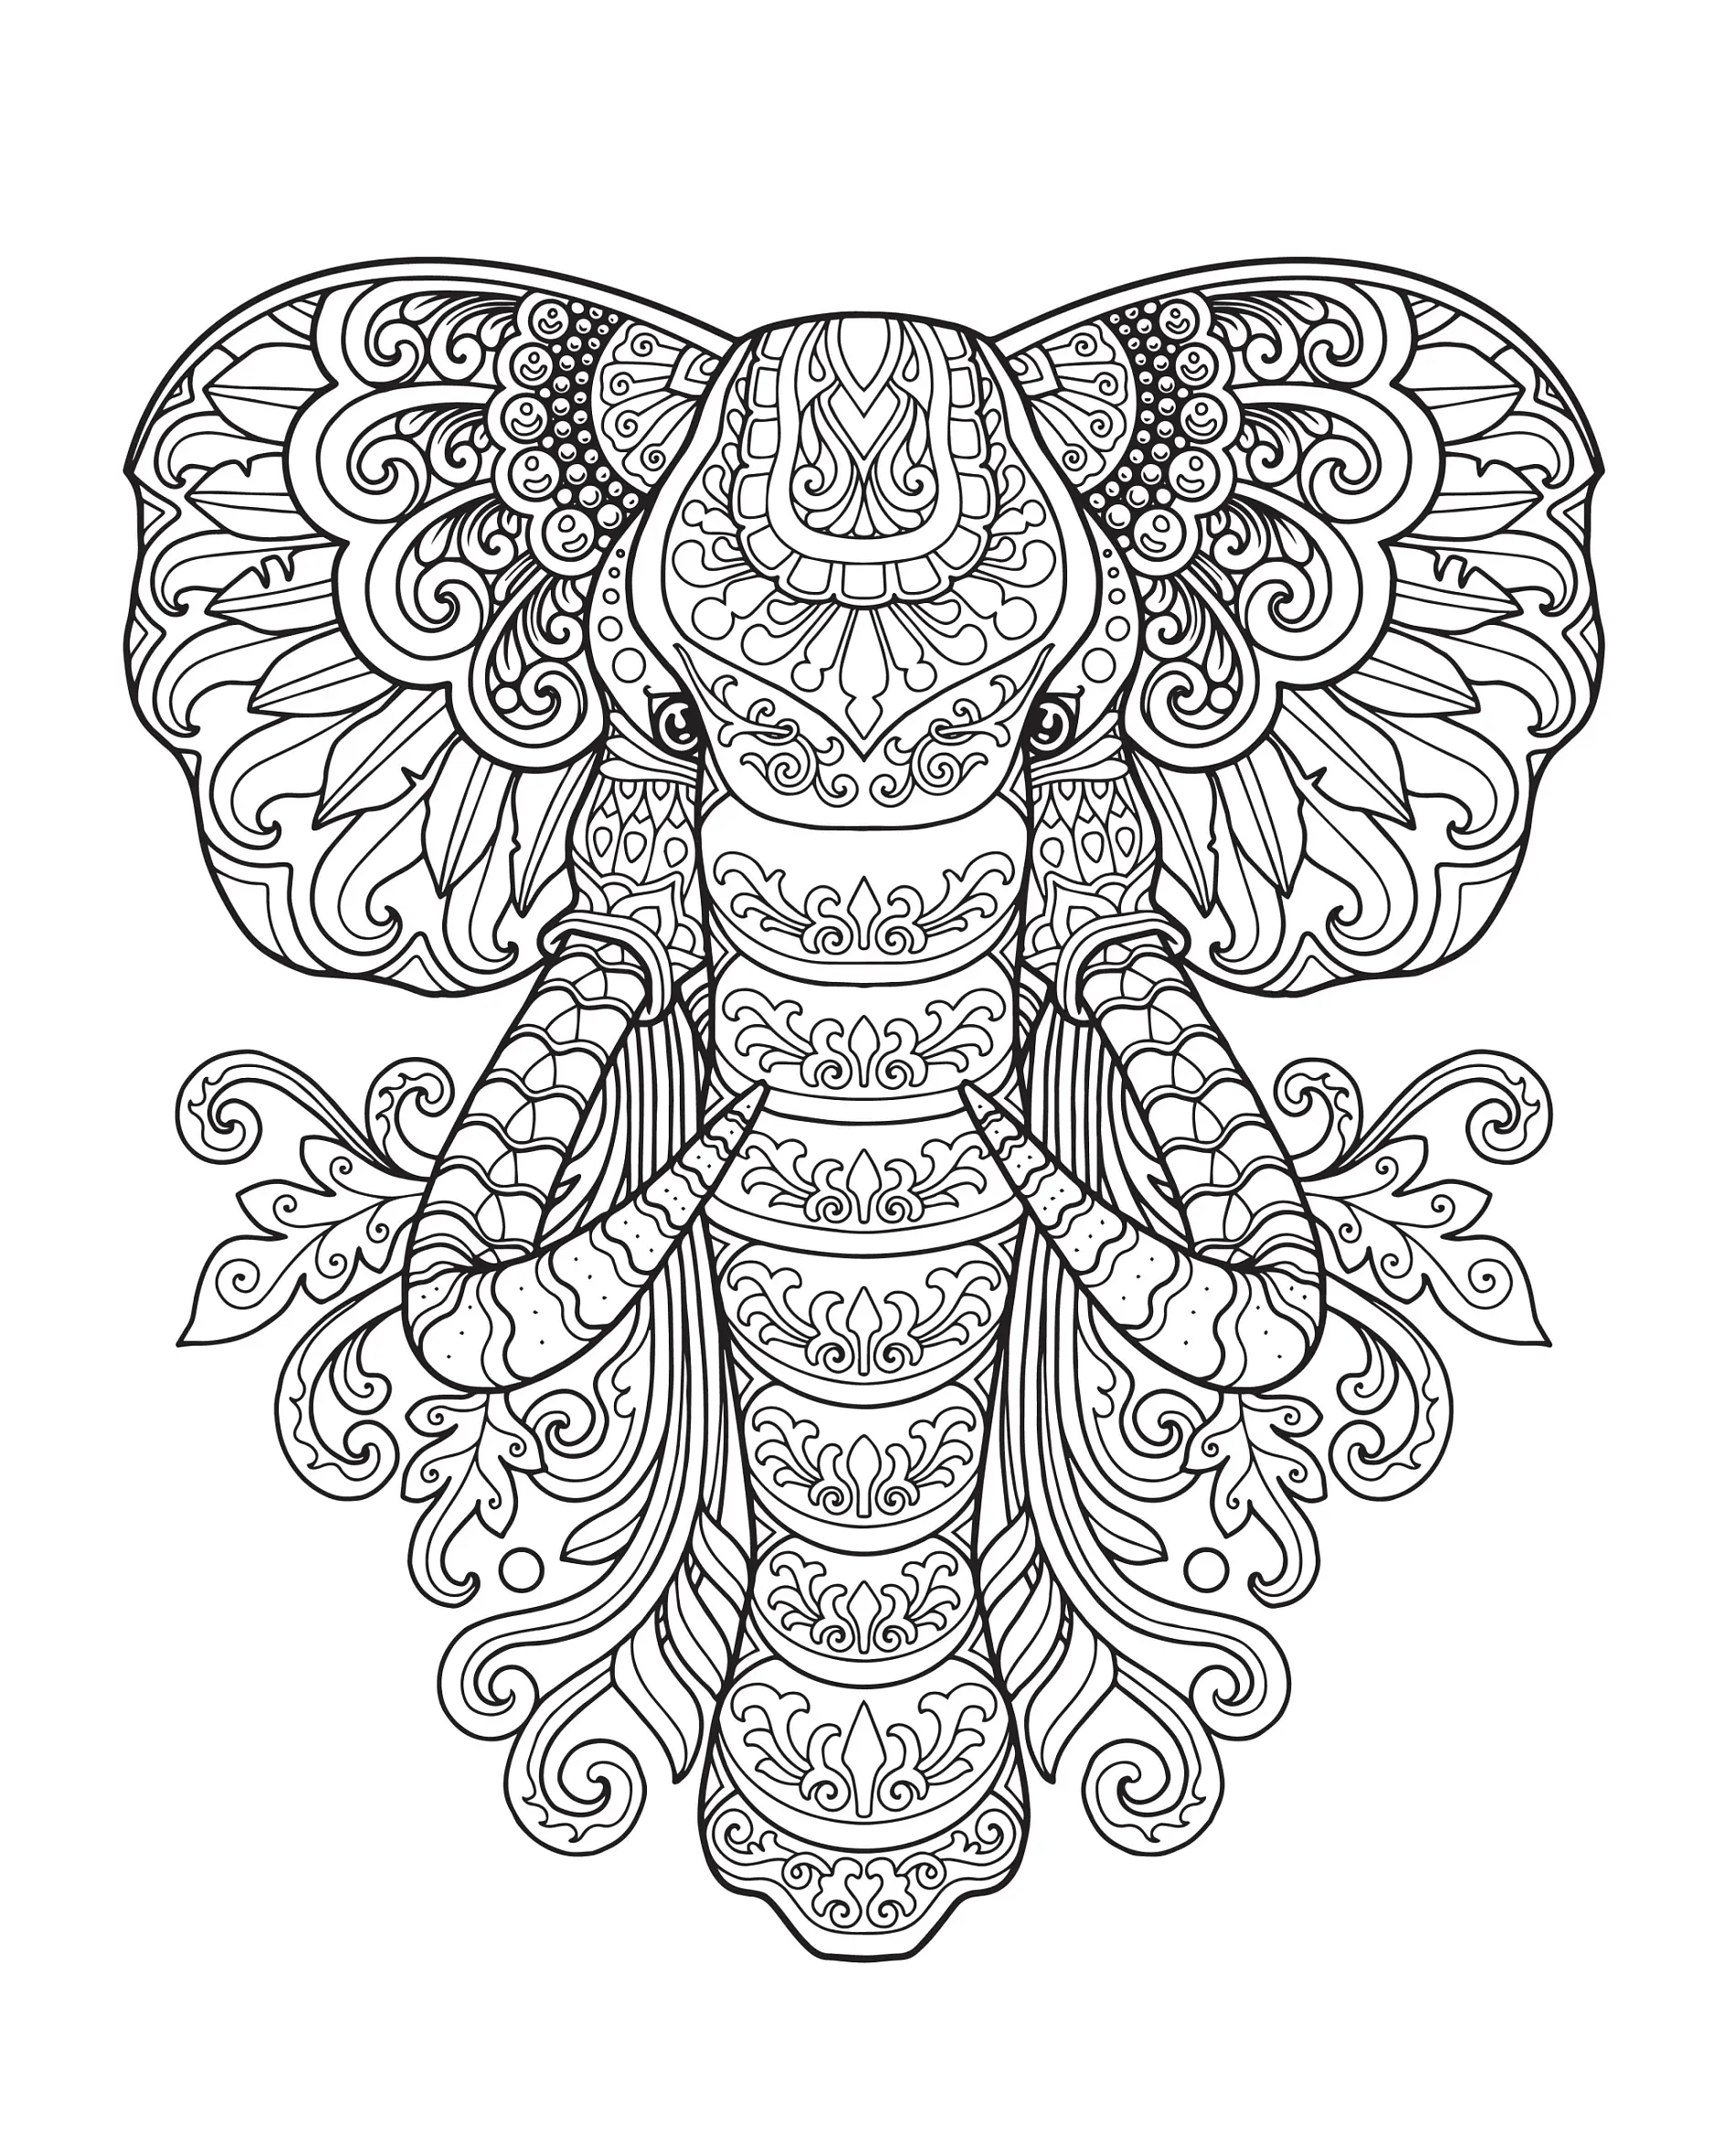 Ausmalbild Mandala Elefant mit detaillierten Verzierungen und Blumenornamenten